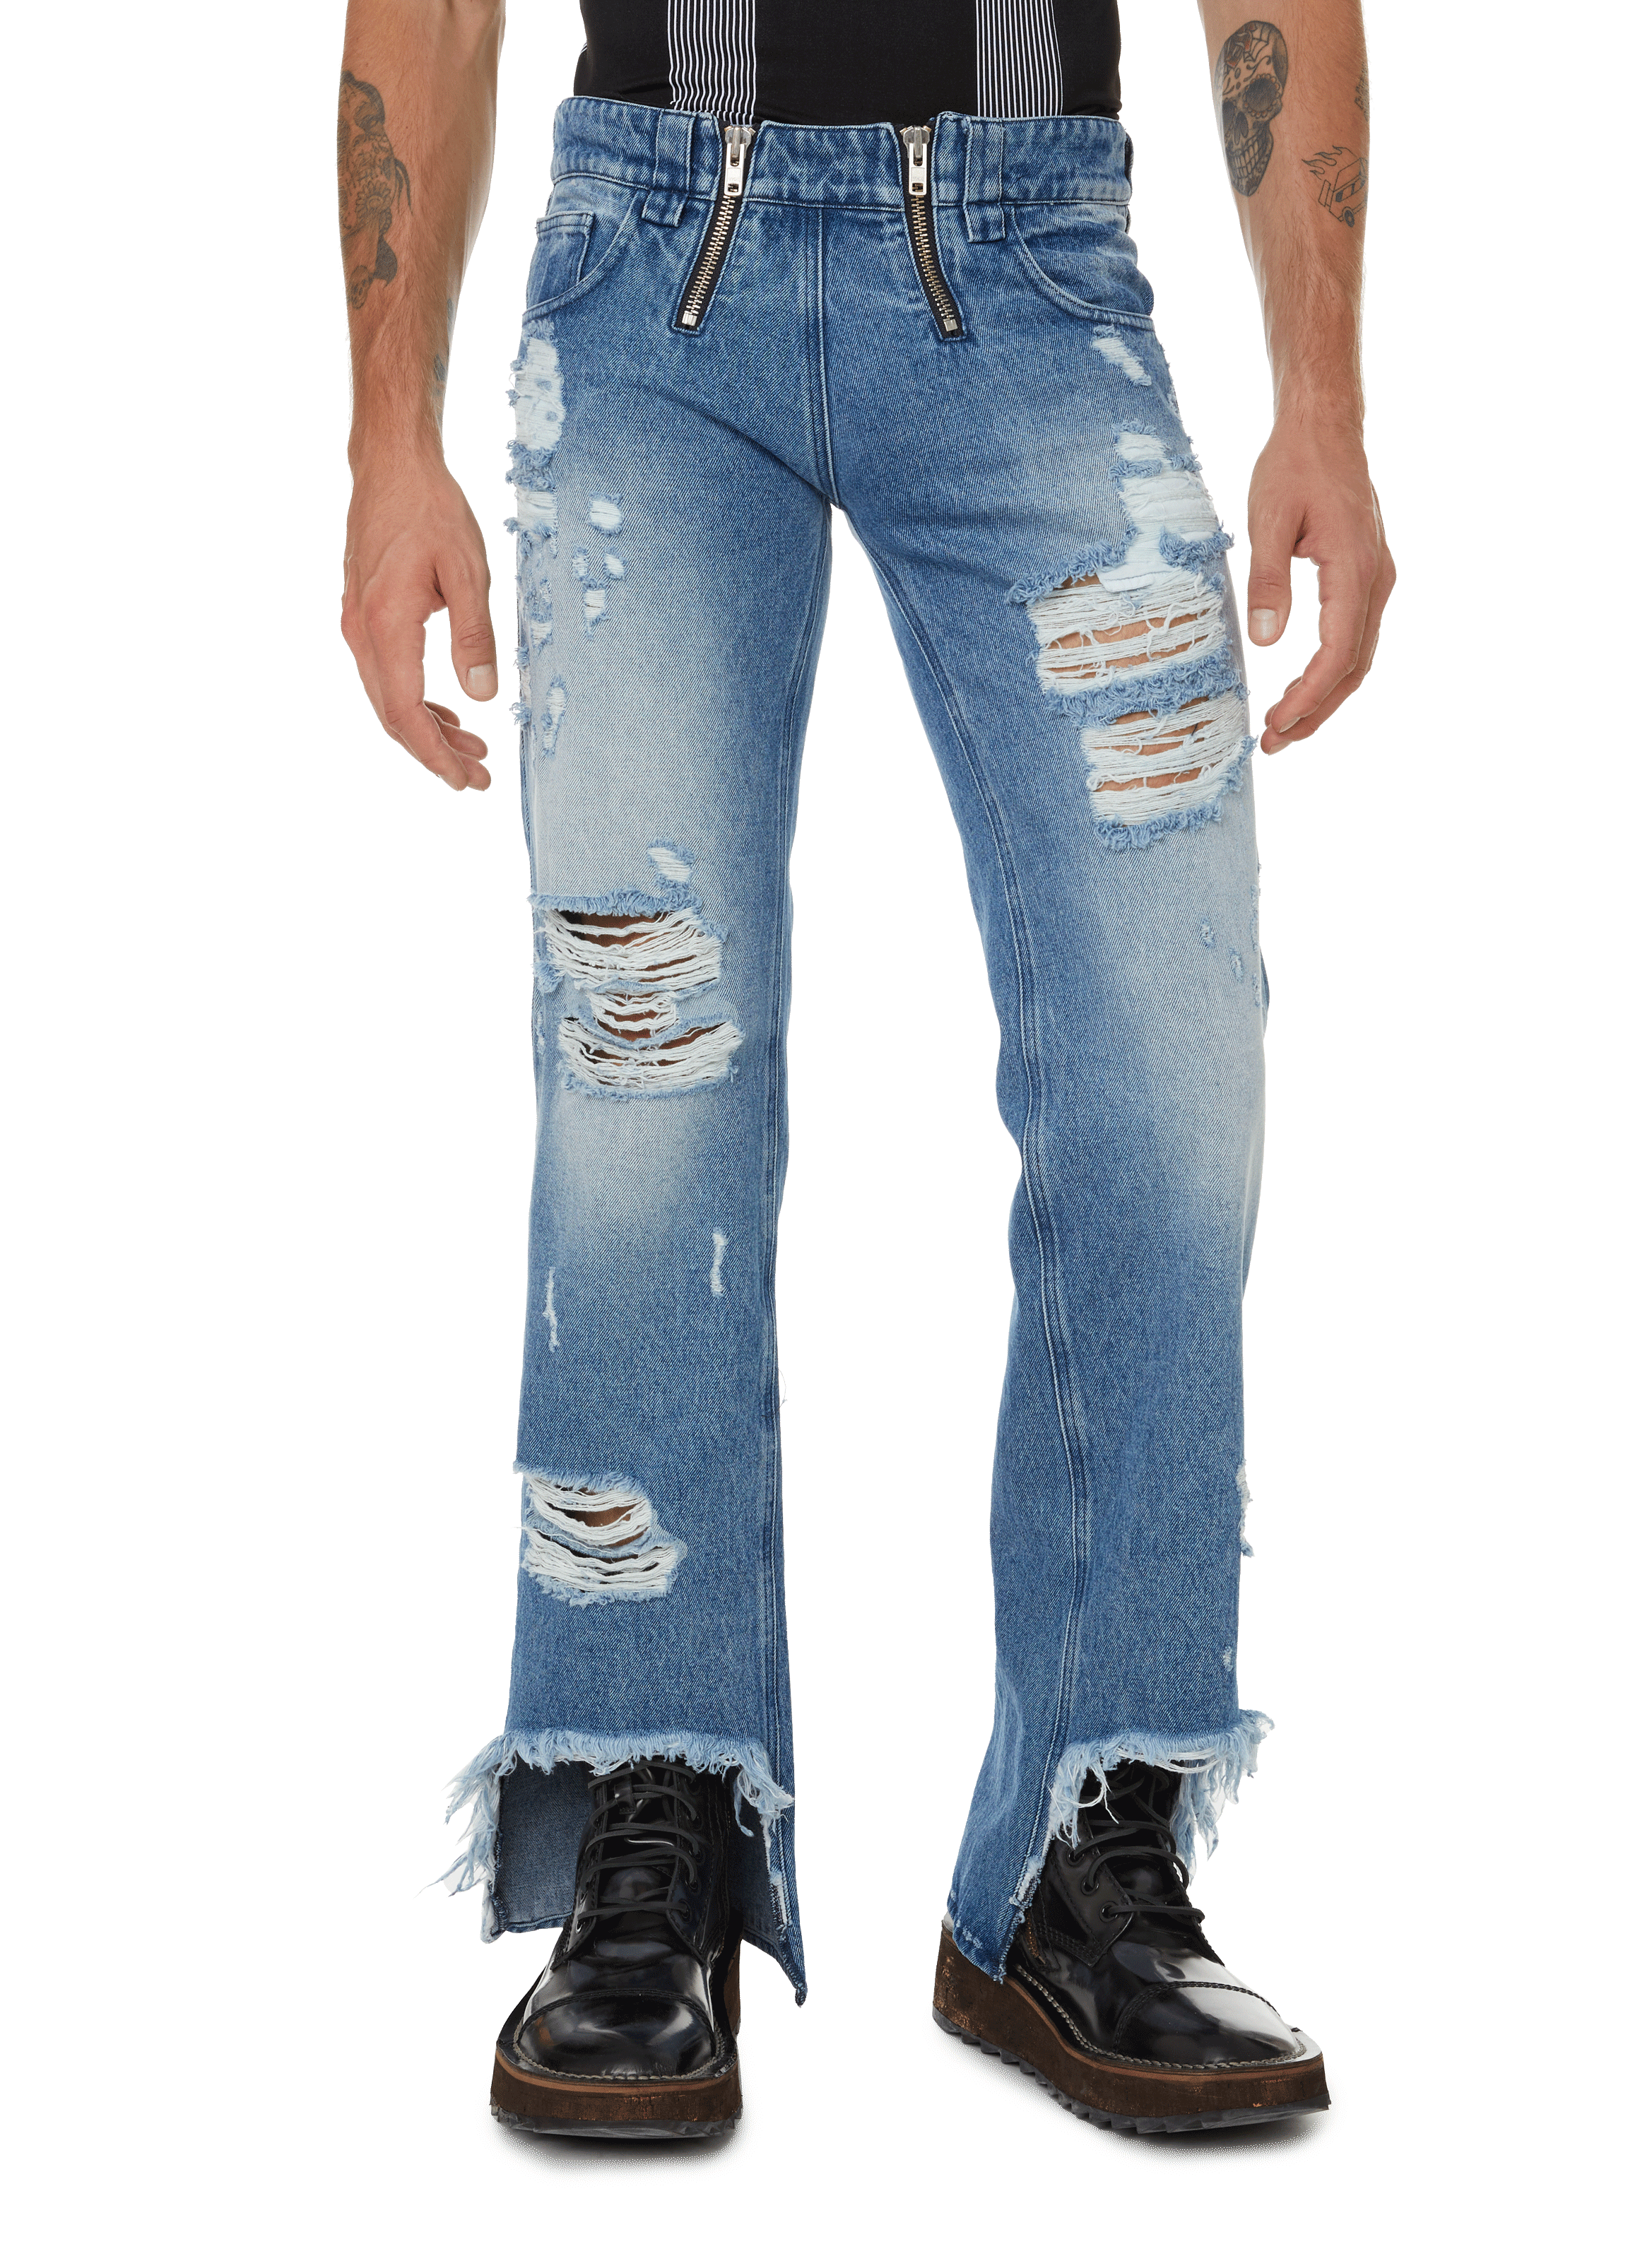 Printemps.com Homme Vêtements Pantalons & Jeans Jeans Coupe droite Jean droit en coton 